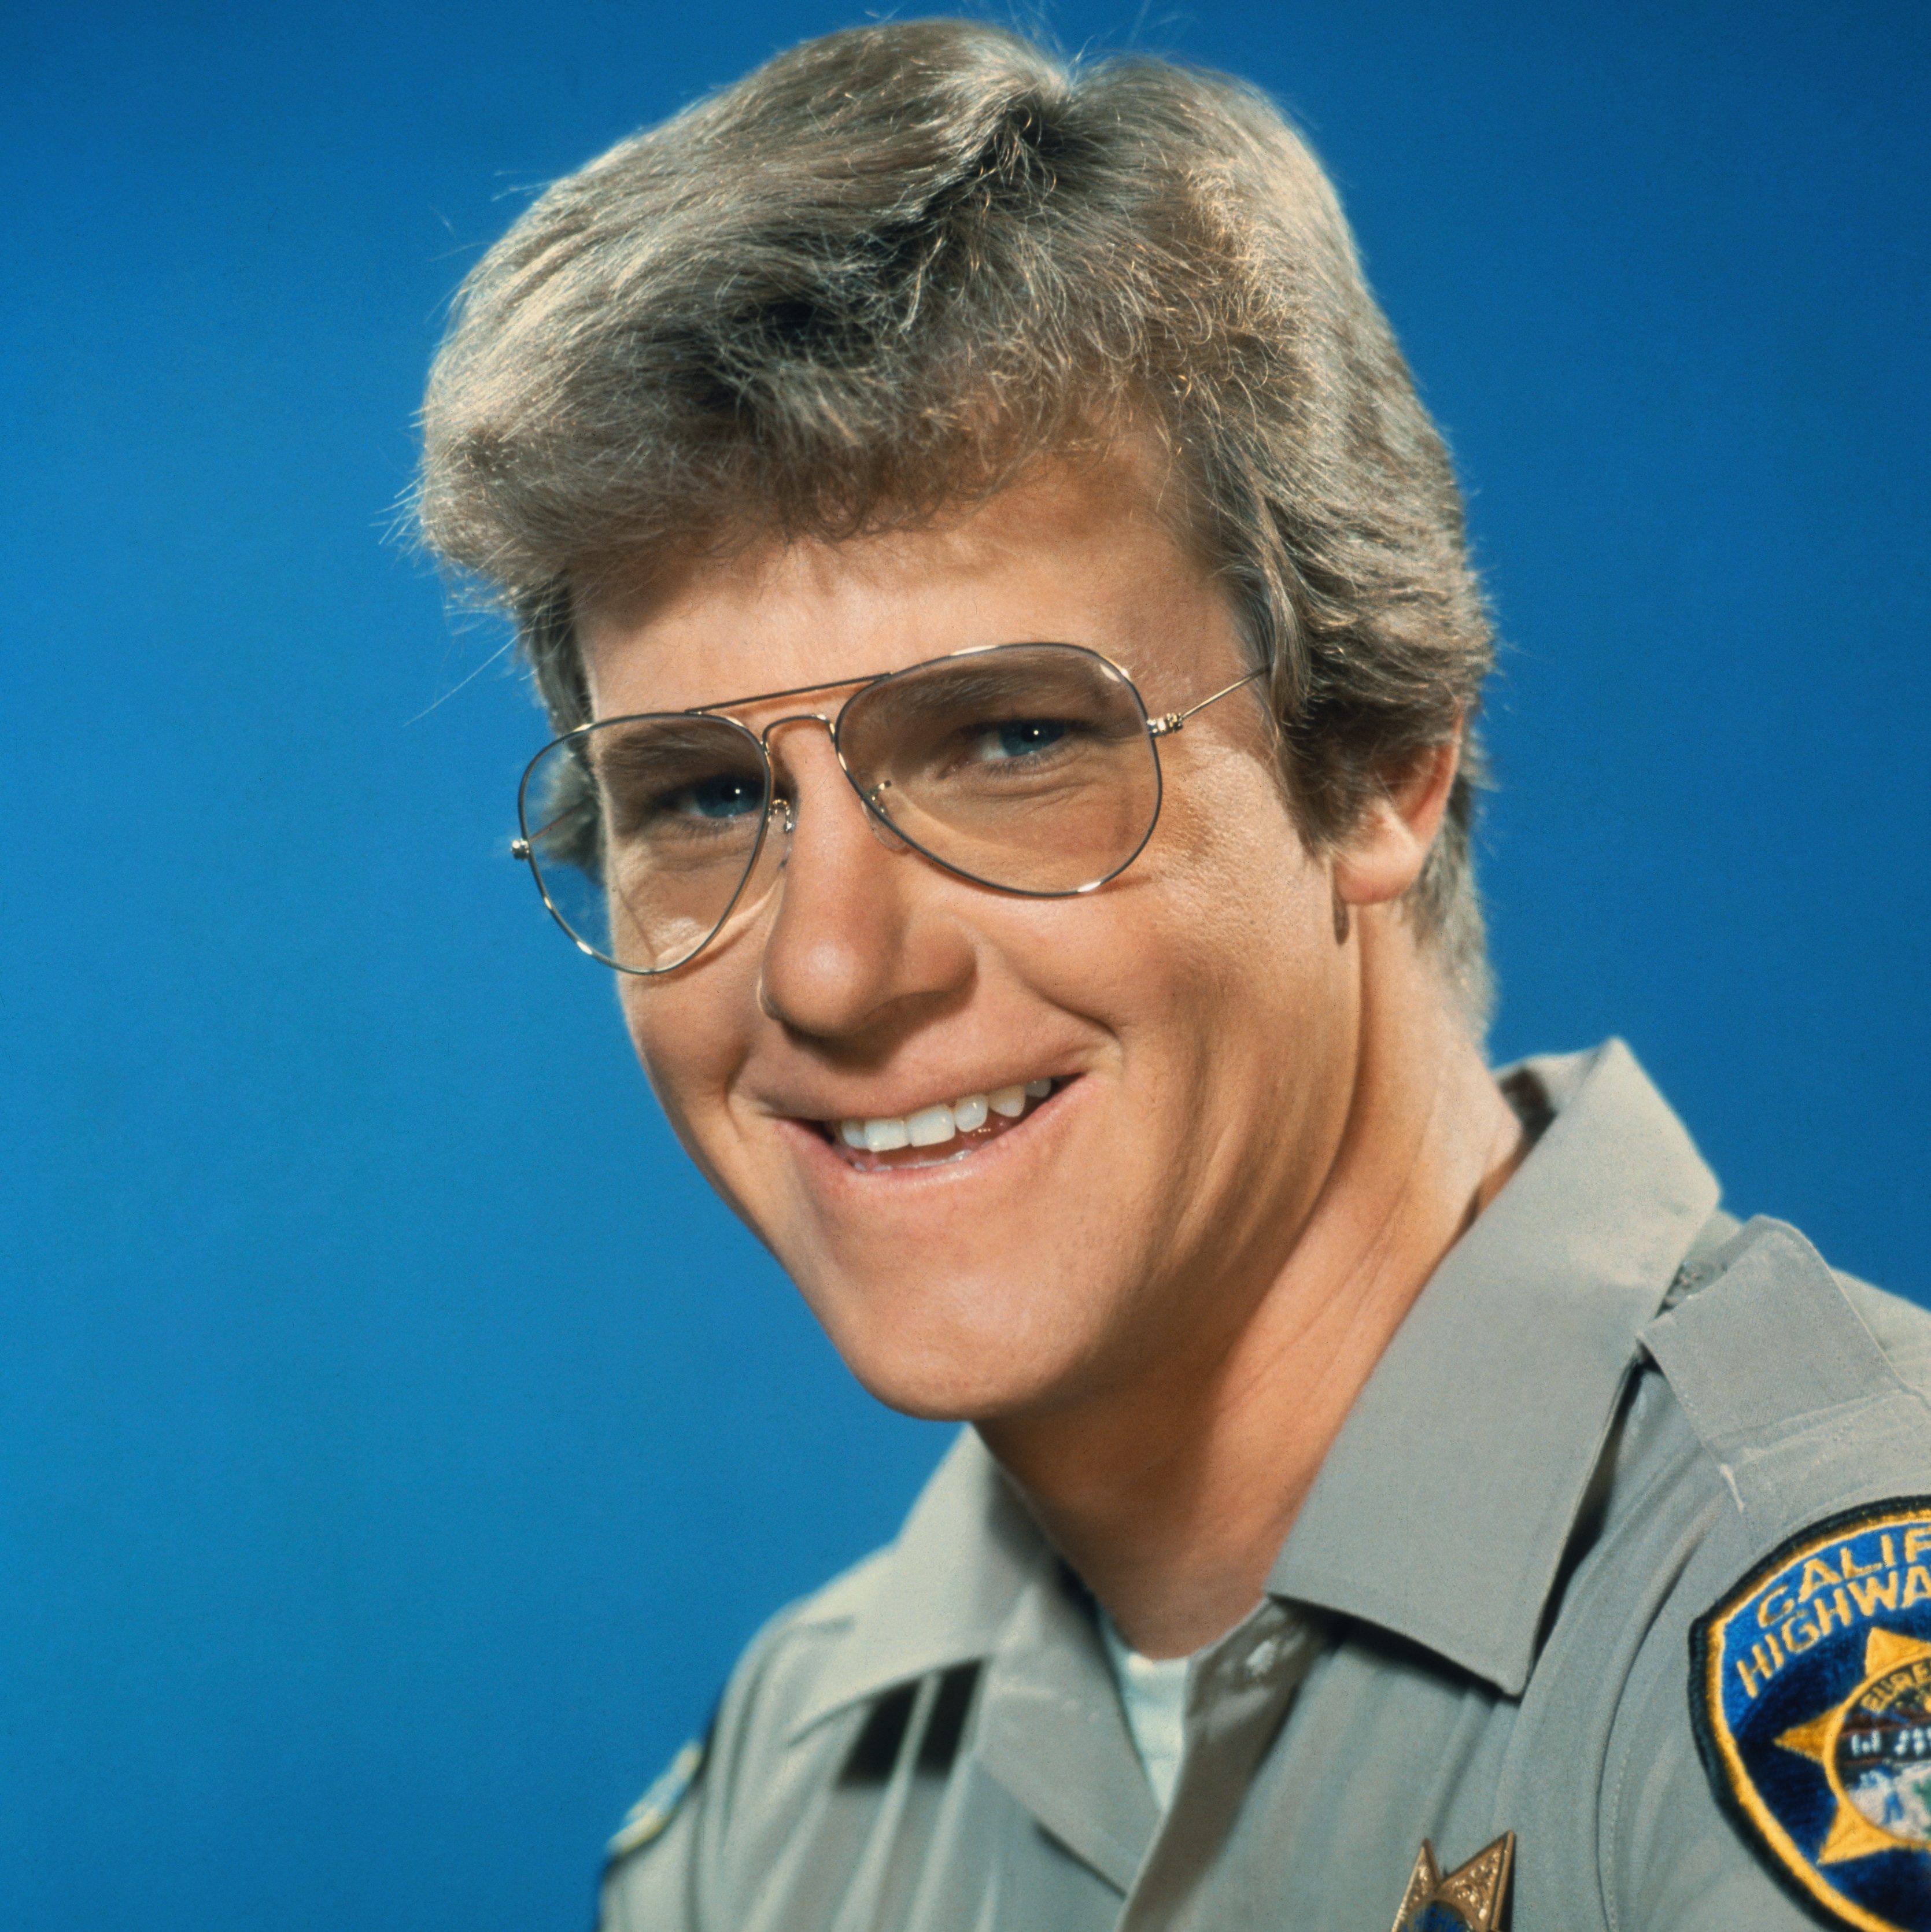 Larry Wilcox, as Officer Jon Baker in ChiPs TV show, 1978